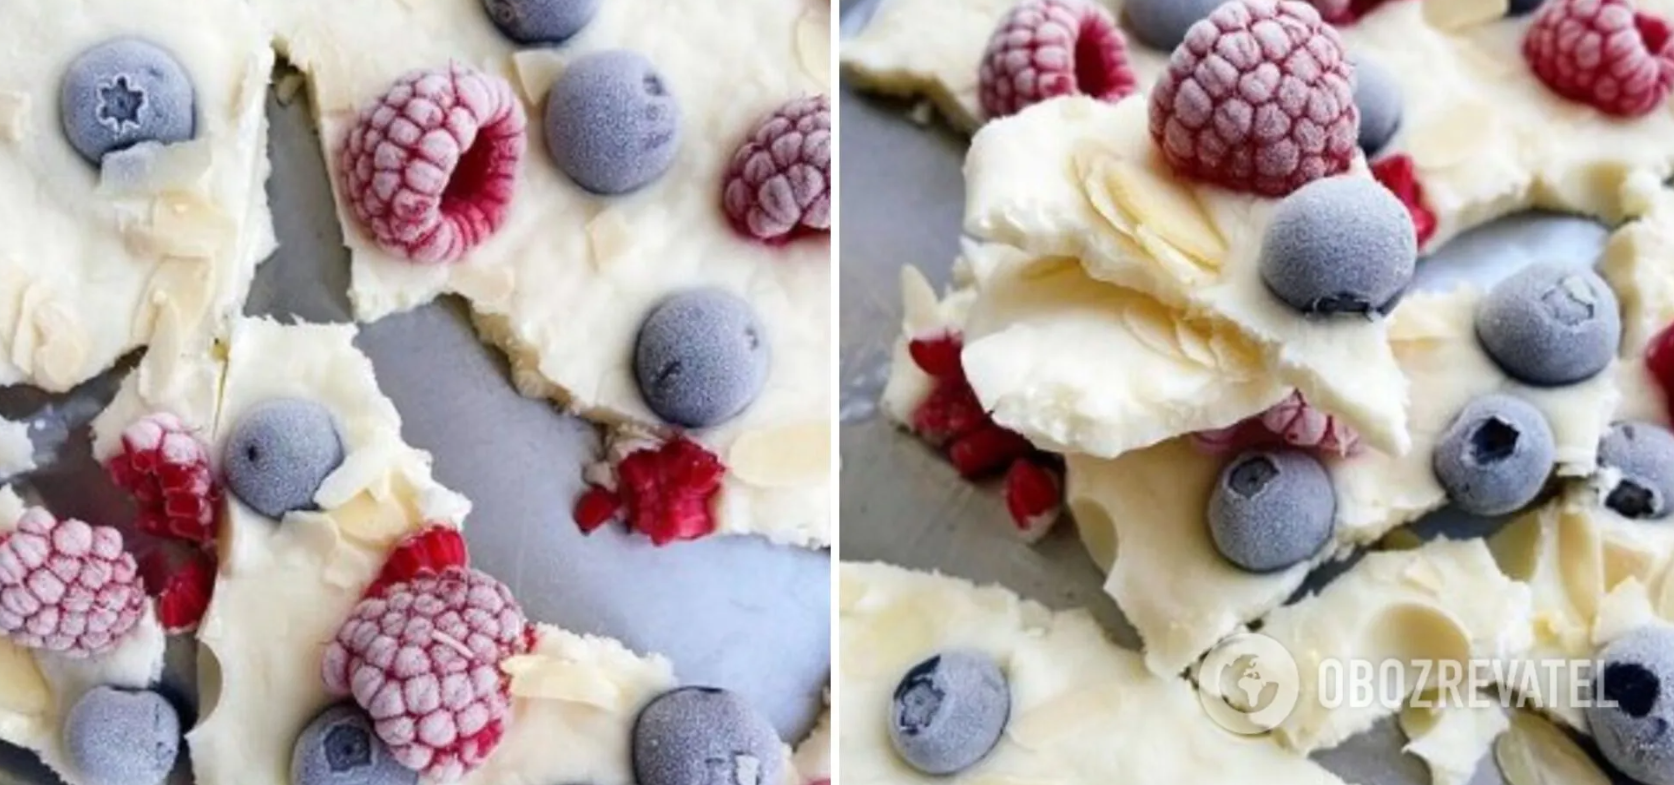 Frozen yoghurt with berries